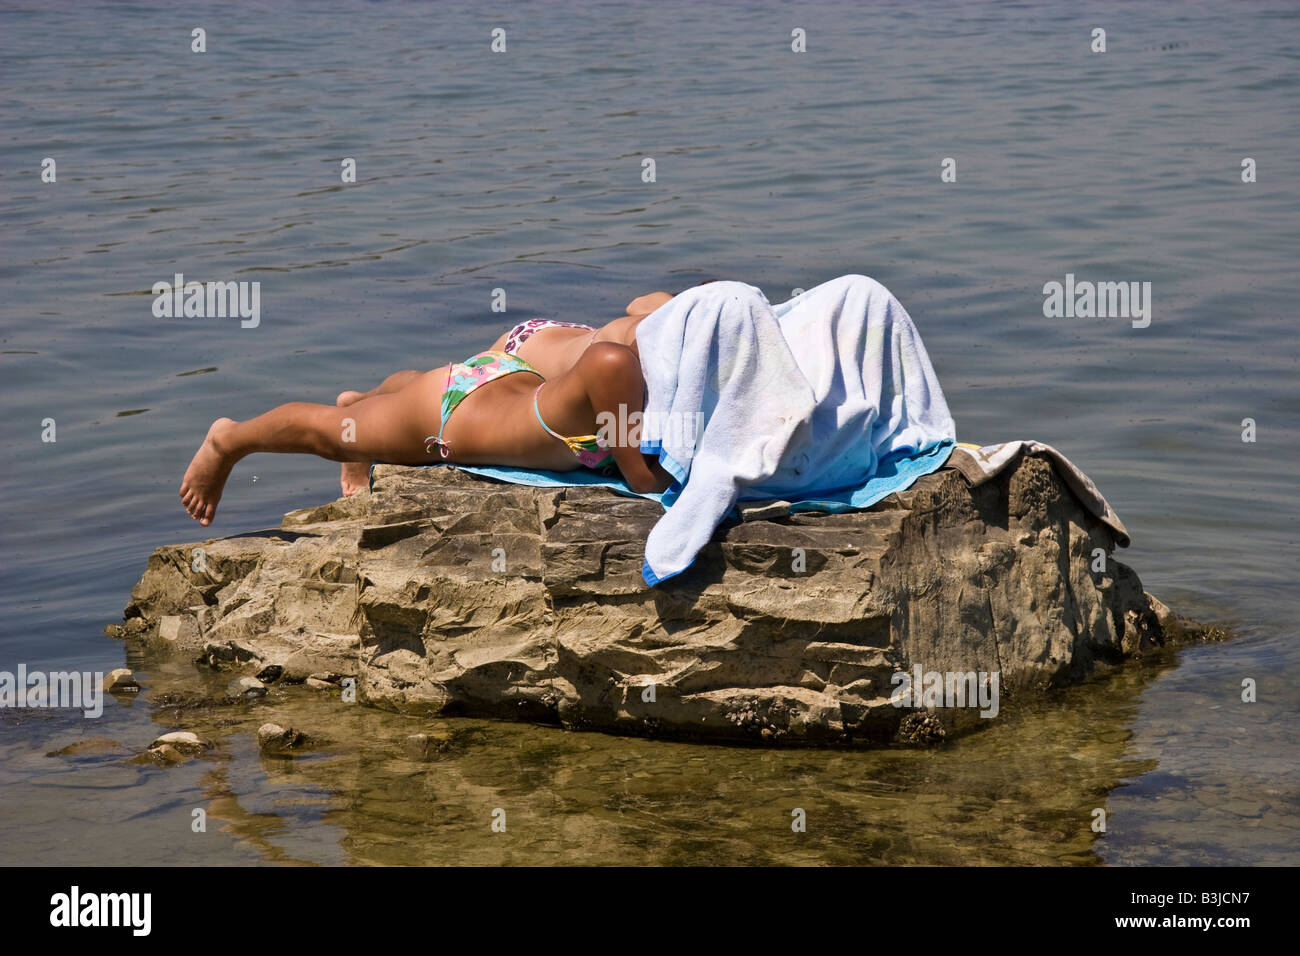 Lac d'eau de plaine, plaine mer pierre falaise, rocher escarpé de l'heure d'été d'été marée Italie Ombrie deux personnes pour prendre le soleil bikini bat Banque D'Images